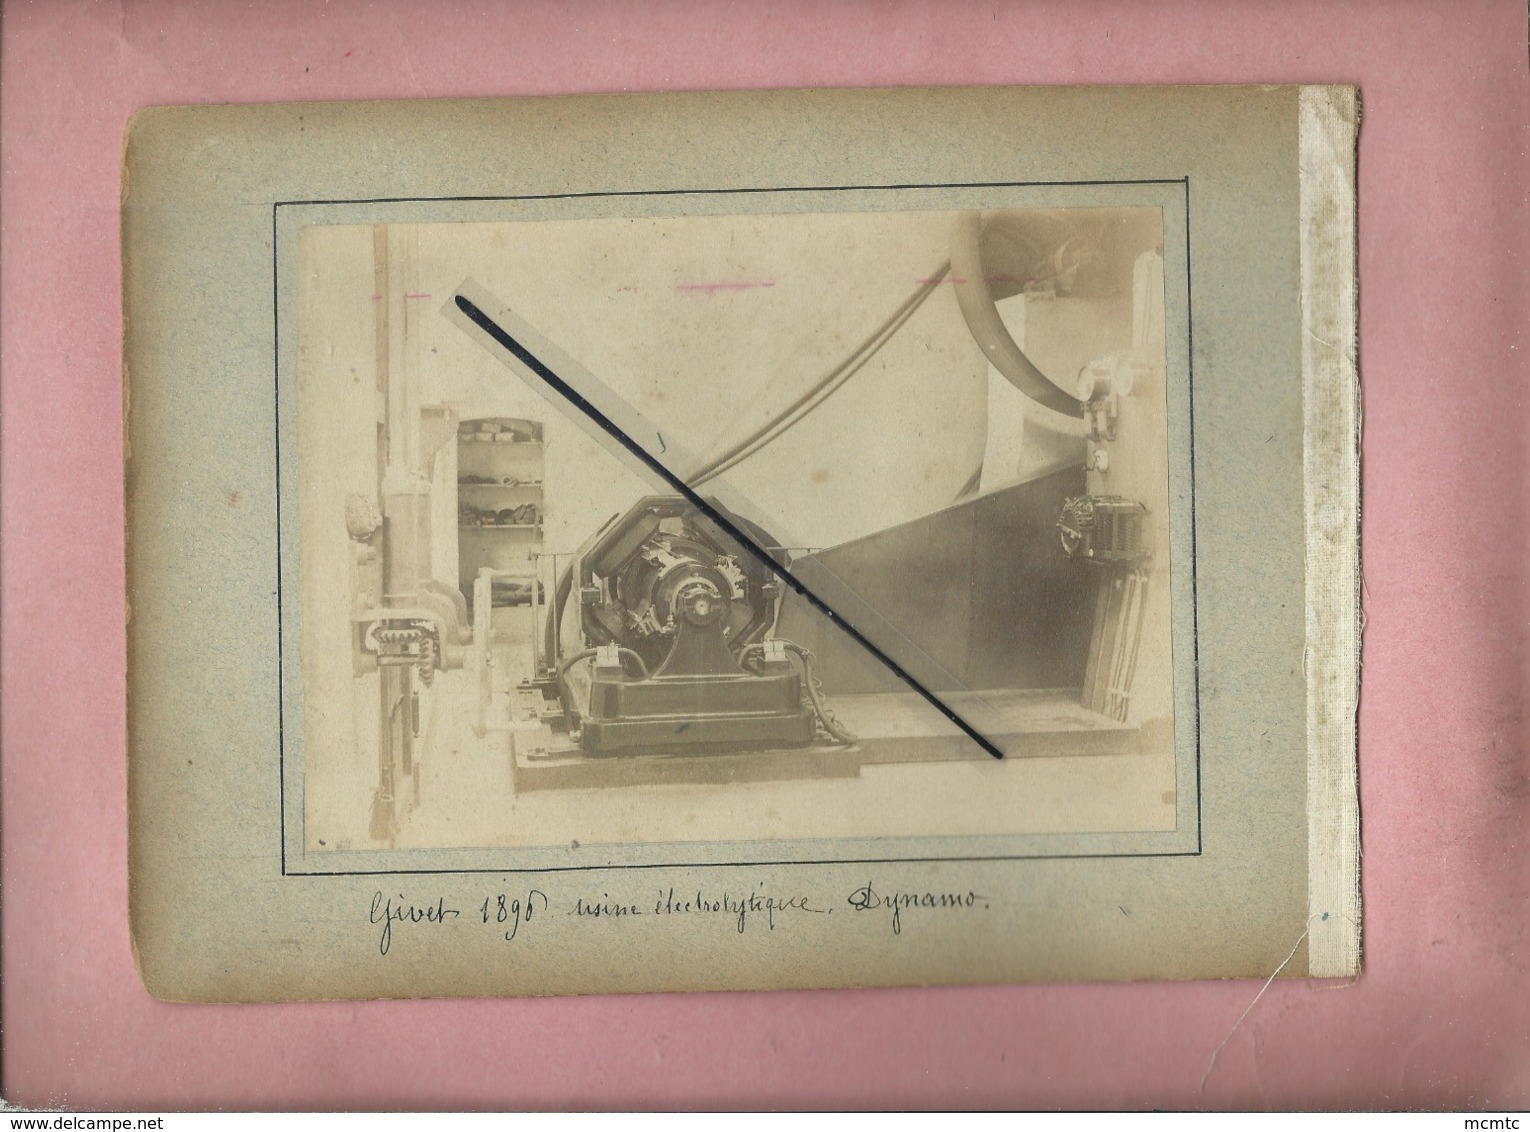 4 Photos Collées Sur Carton Recto,verso-  Givet 1896 Usine électrolytique -Dynamo Et Epinay Sur Seine Août1896 Portraits - Givet